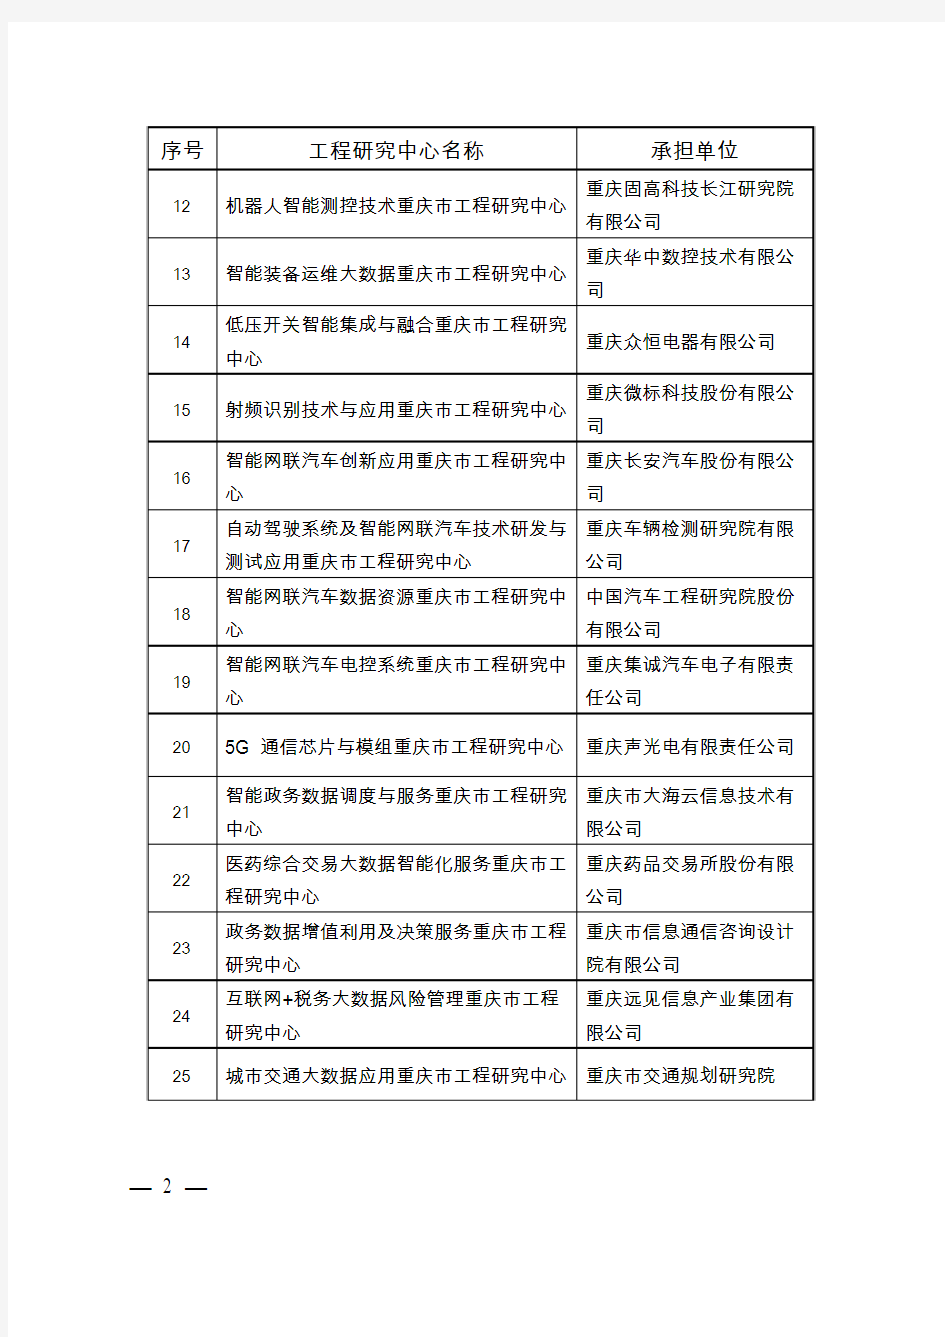 重庆市大数据智能化领域2018年市级工程研究中心认定名单